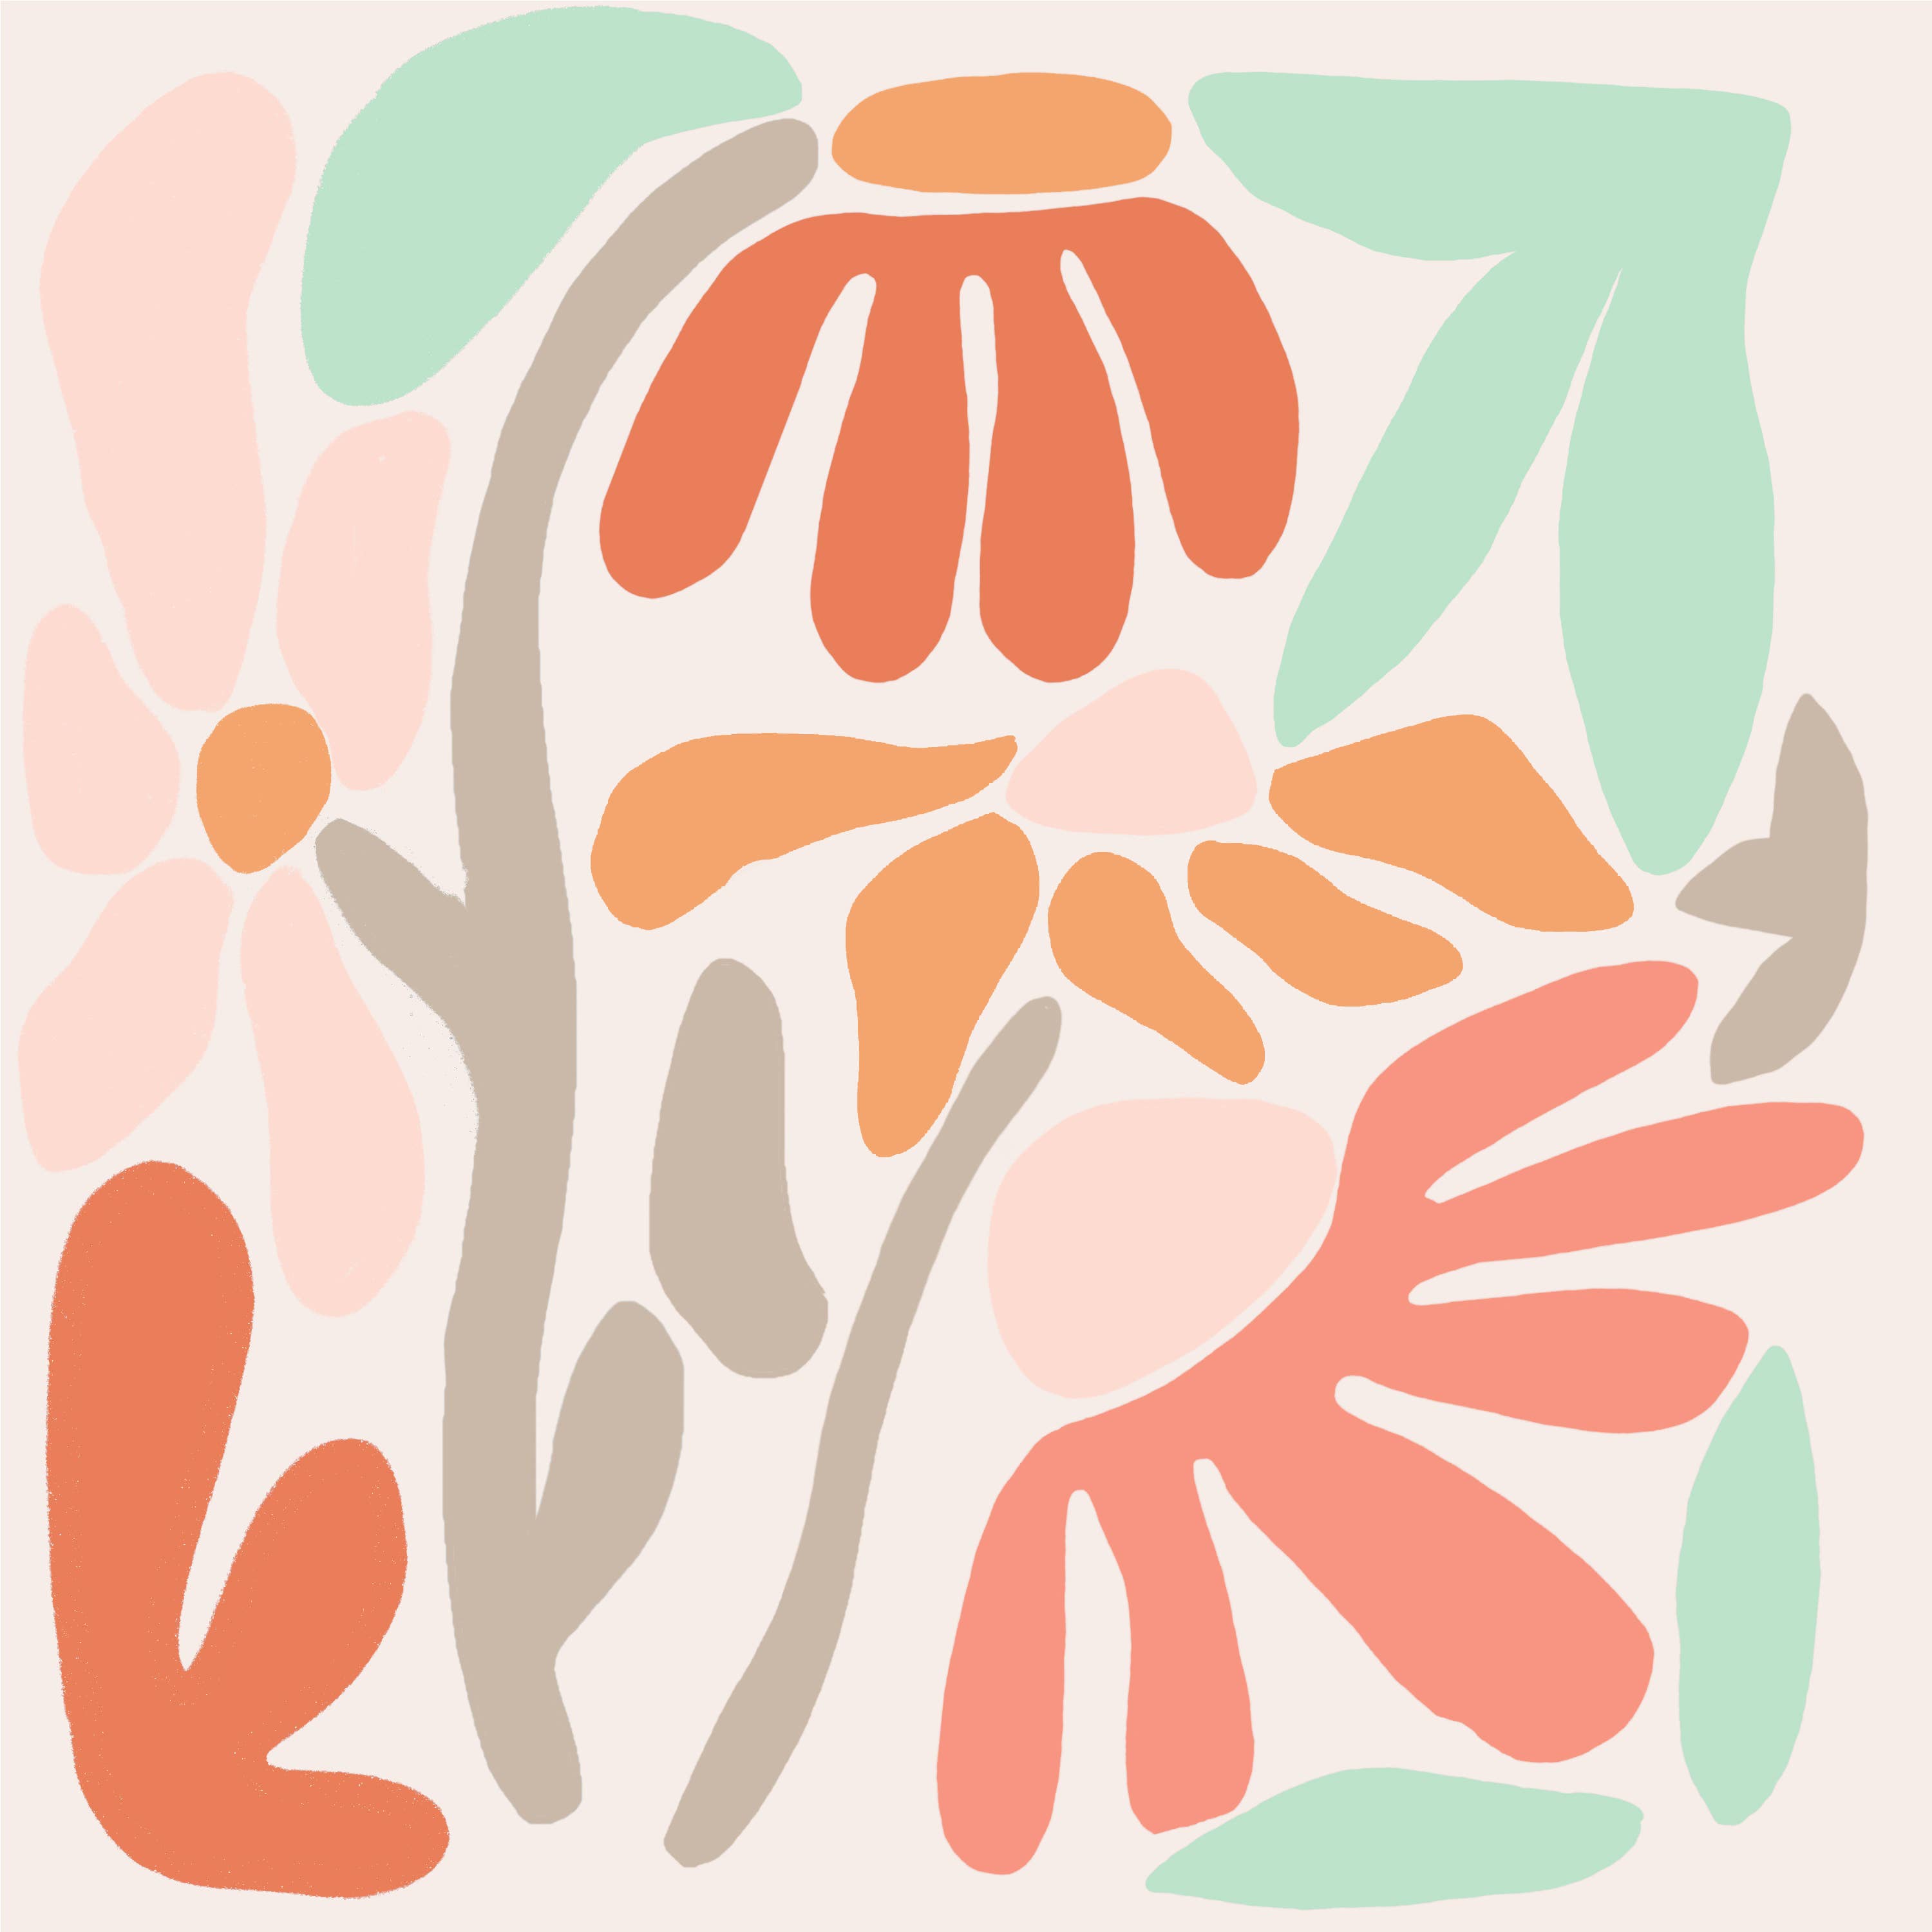 Mod Botanicals Meditative Art Paint by Number Kit+ Easel